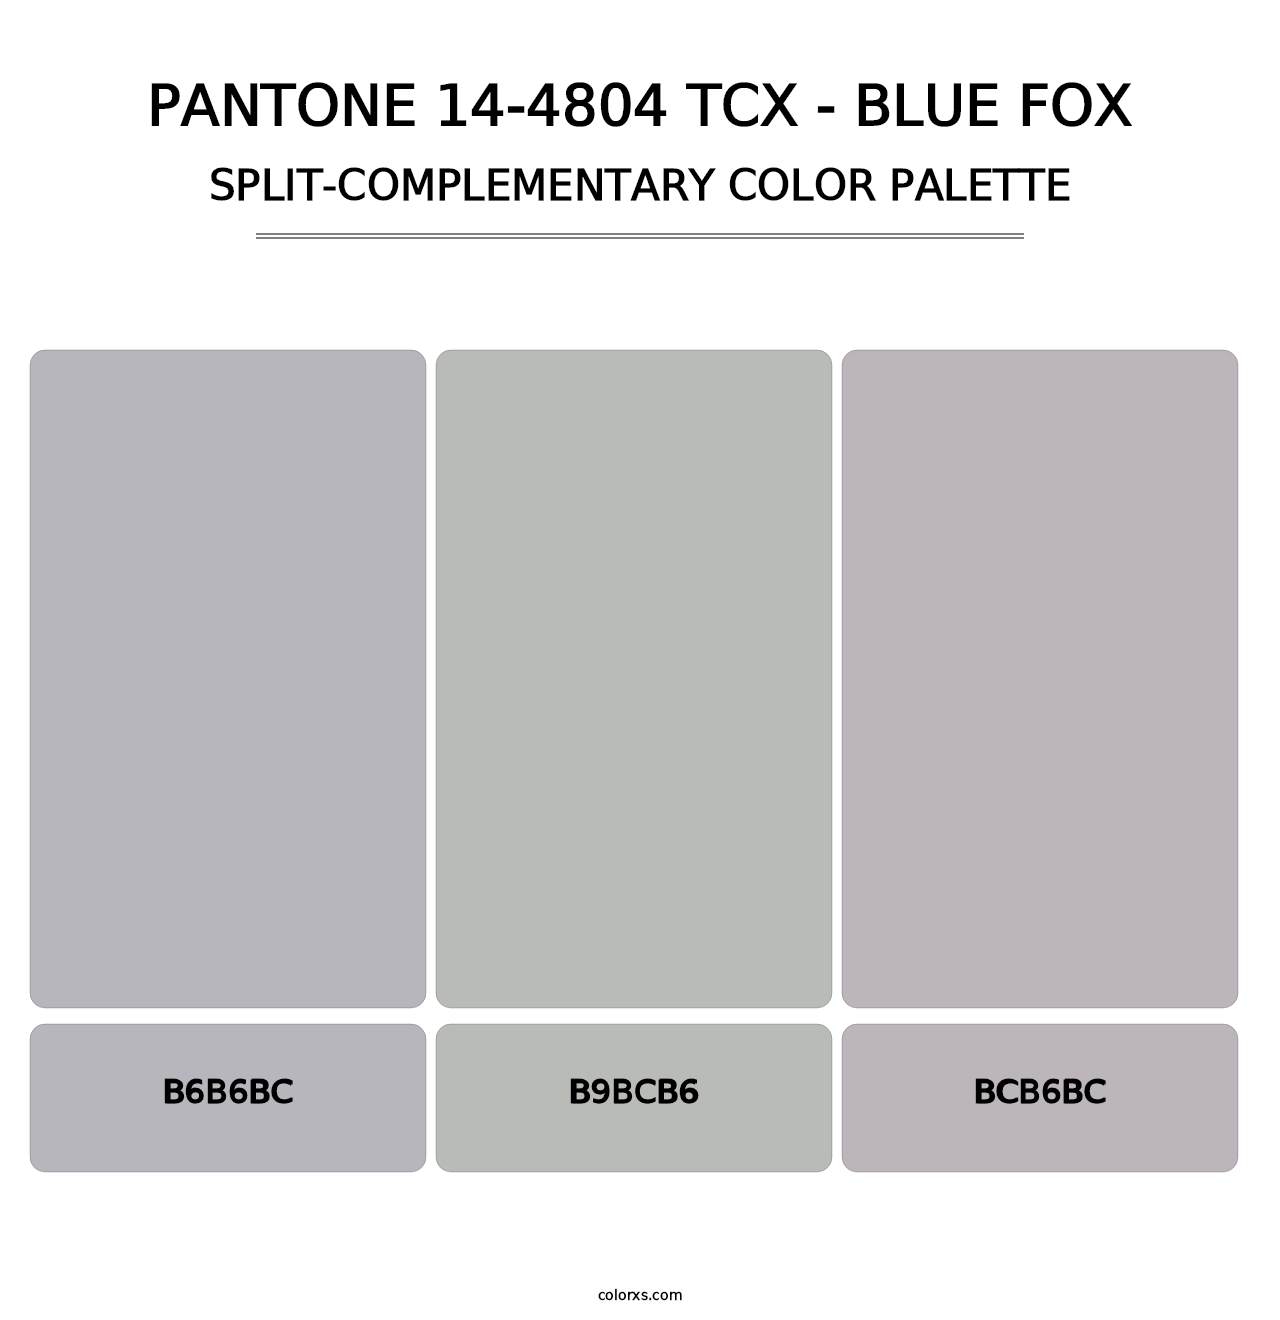 PANTONE 14-4804 TCX - Blue Fox - Split-Complementary Color Palette